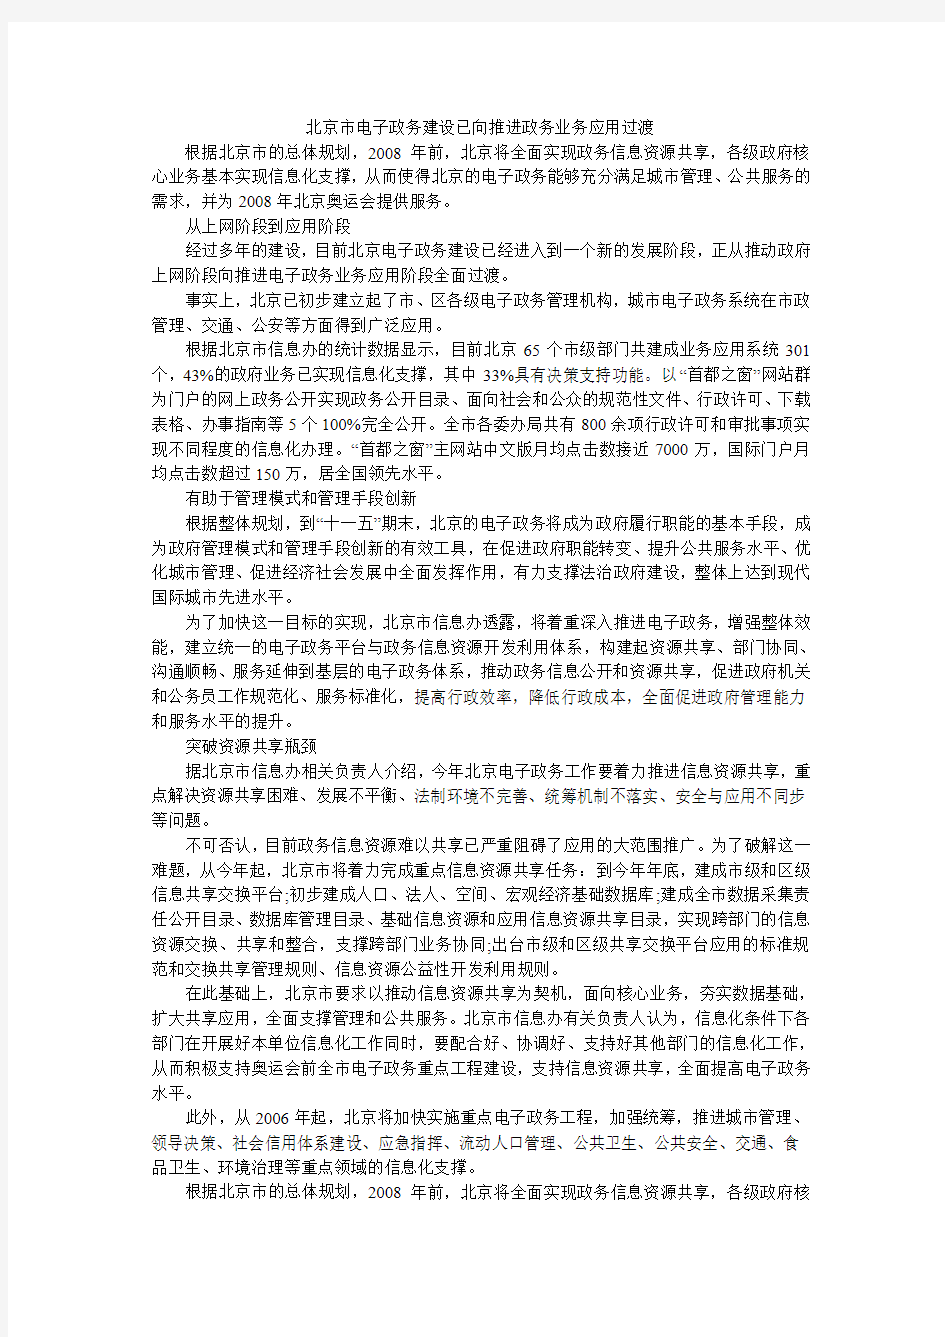 北京市电子政务建设已向推进政务业务应用过渡